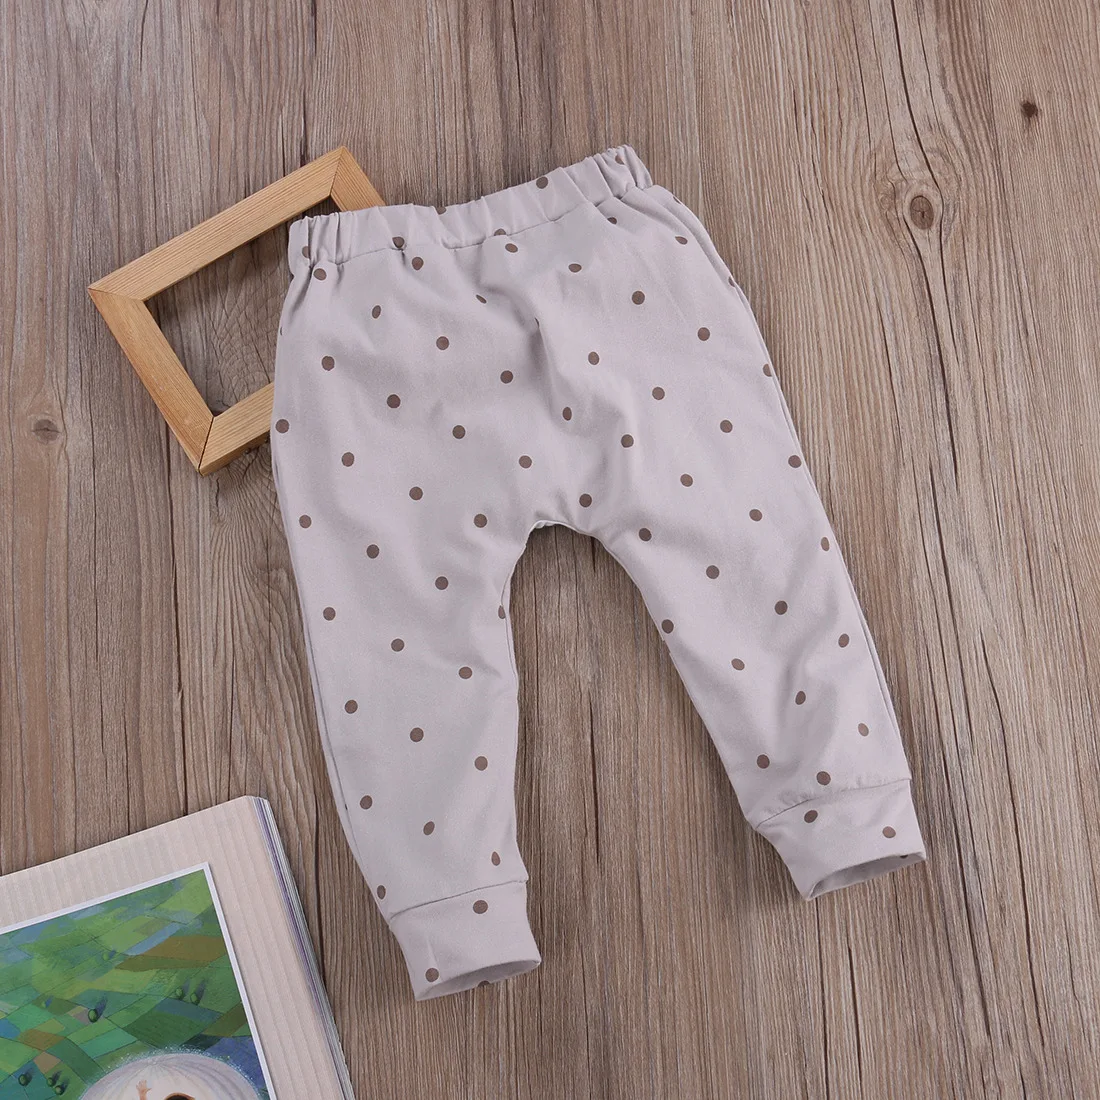 Infantil/повседневные штаны-шаровары унисекс для маленьких мальчиков и девочек, штаны с рисунком лисы, для детей 0-24 м